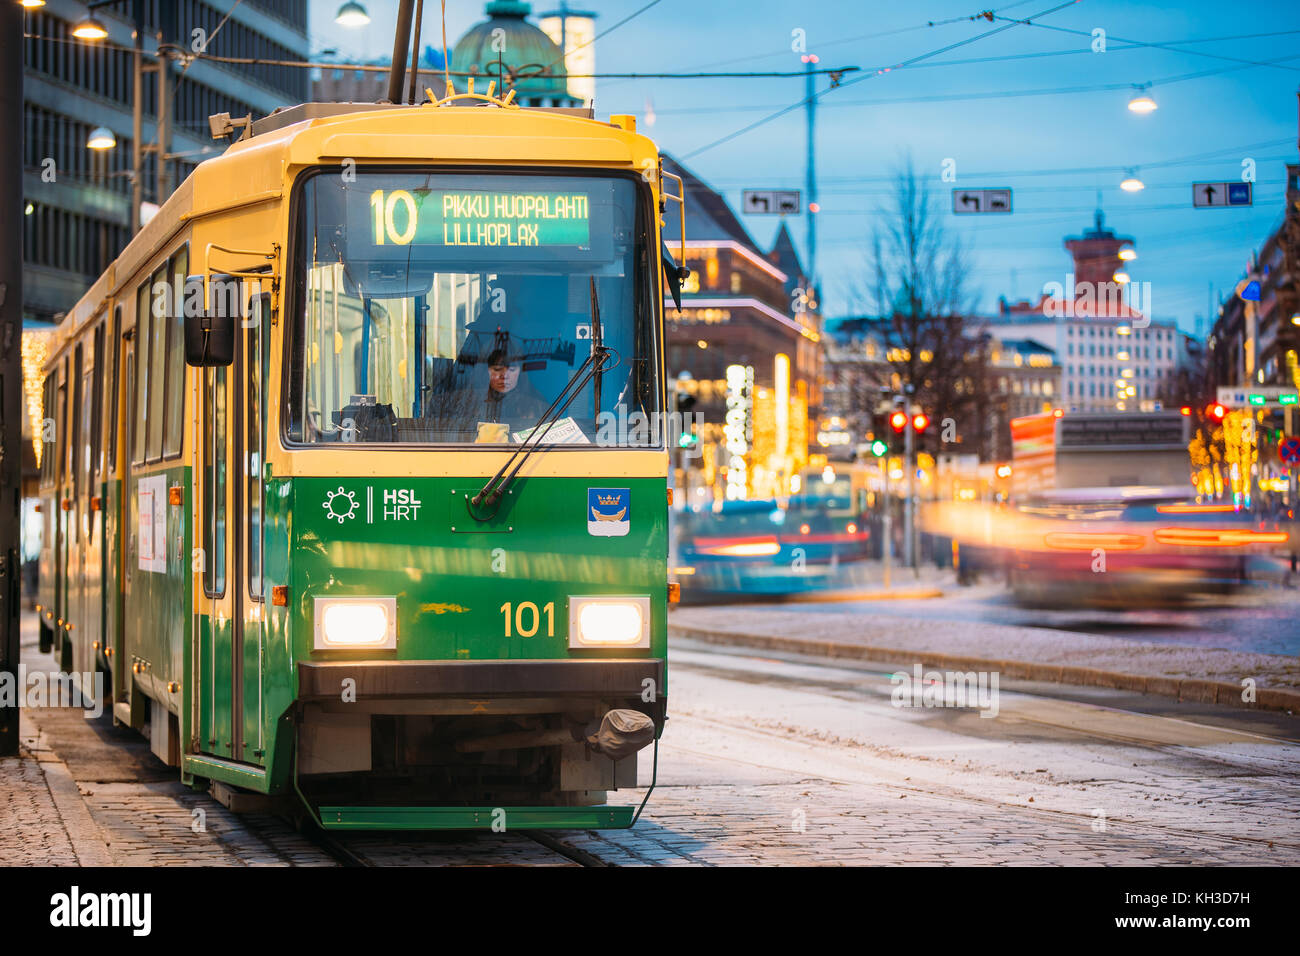 Helsinki, Finnland - 7. Dezember 2016: öffentliche Straßenbahn mit der Anzahl der 10 Route fährt von einem Anschlag auf mannerheim Avenue in Helsinki. Straße in kluu Stockfoto